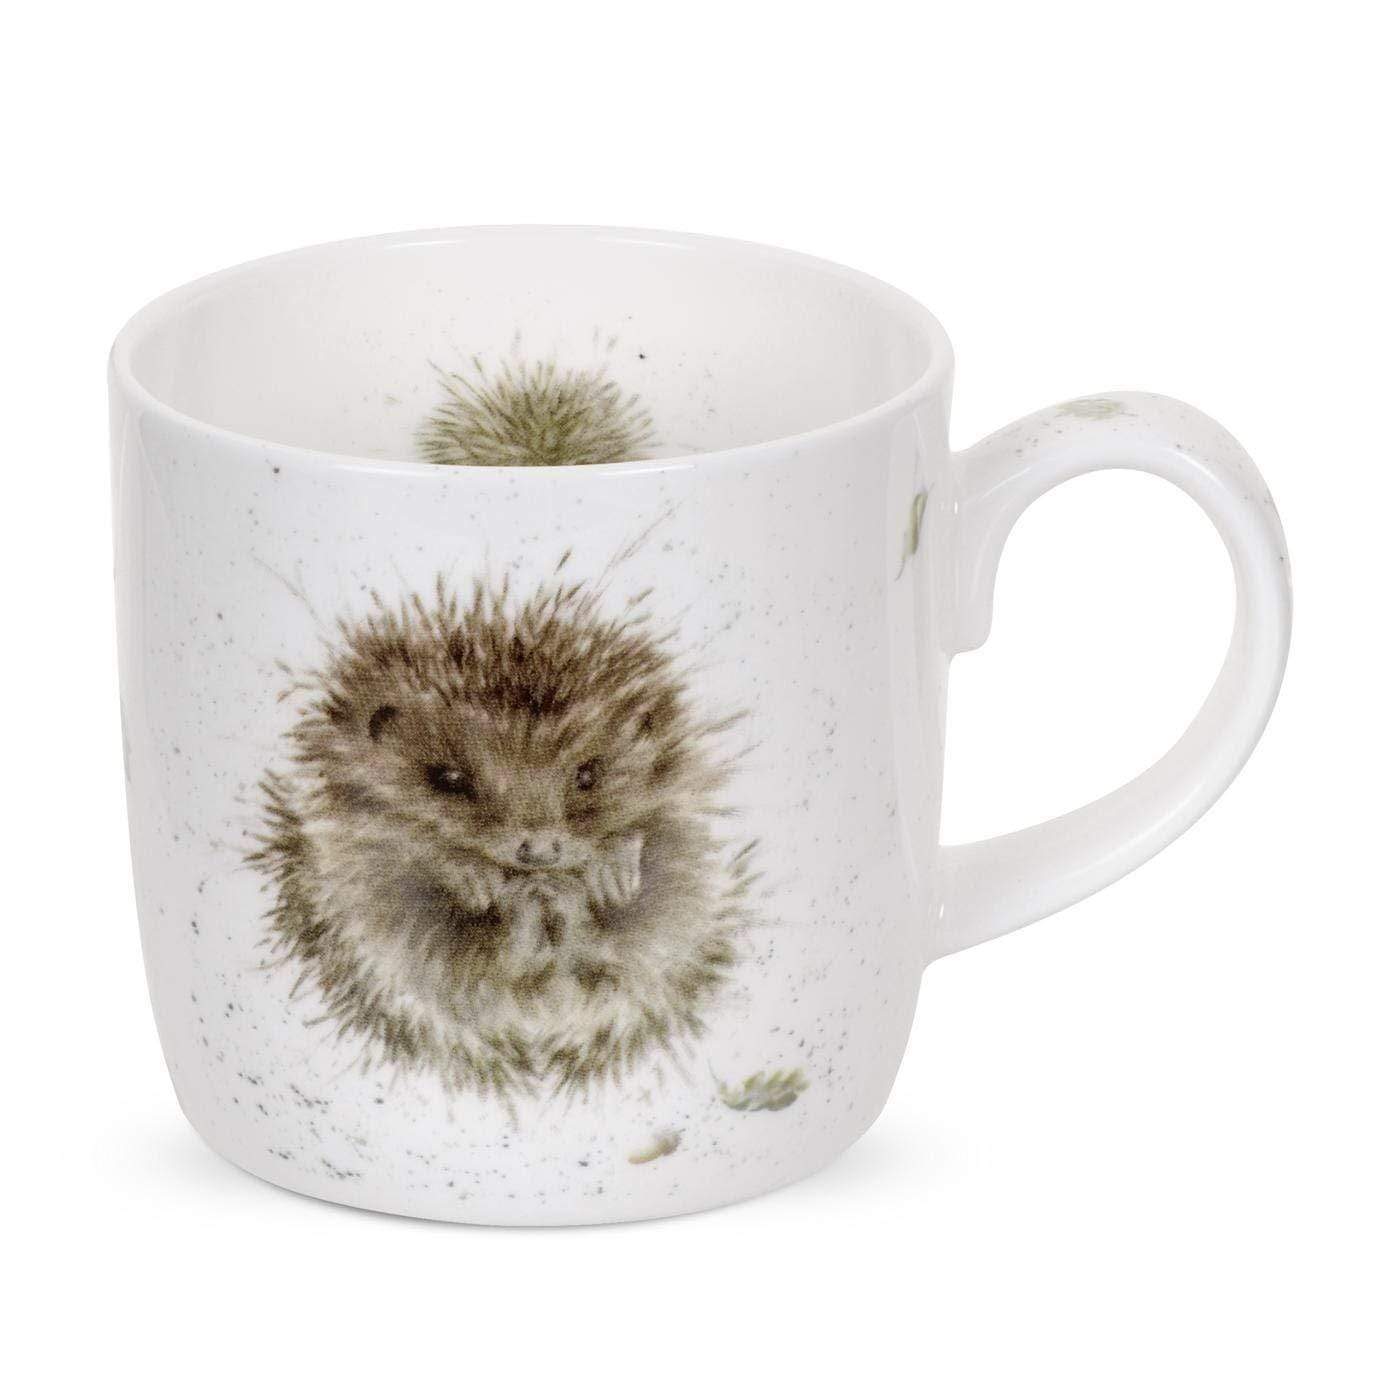 Wrendale Designs Mugs & Drinkware Awakening Country Animal Illustrated Mugs - Choice of designs